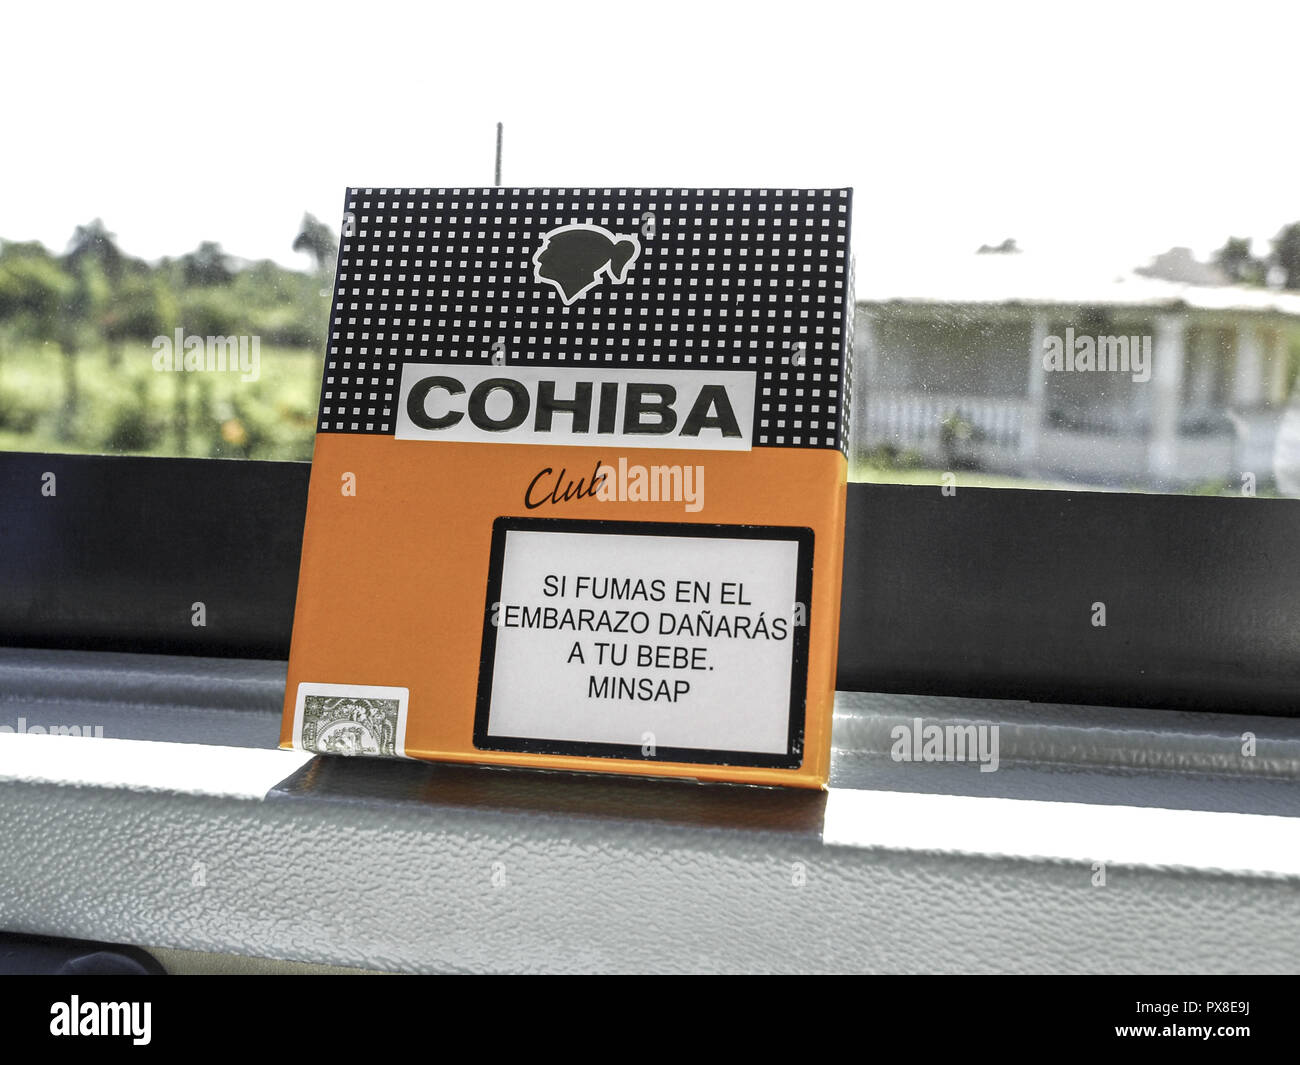 Cohiba cigars, Cuba Stock Photo